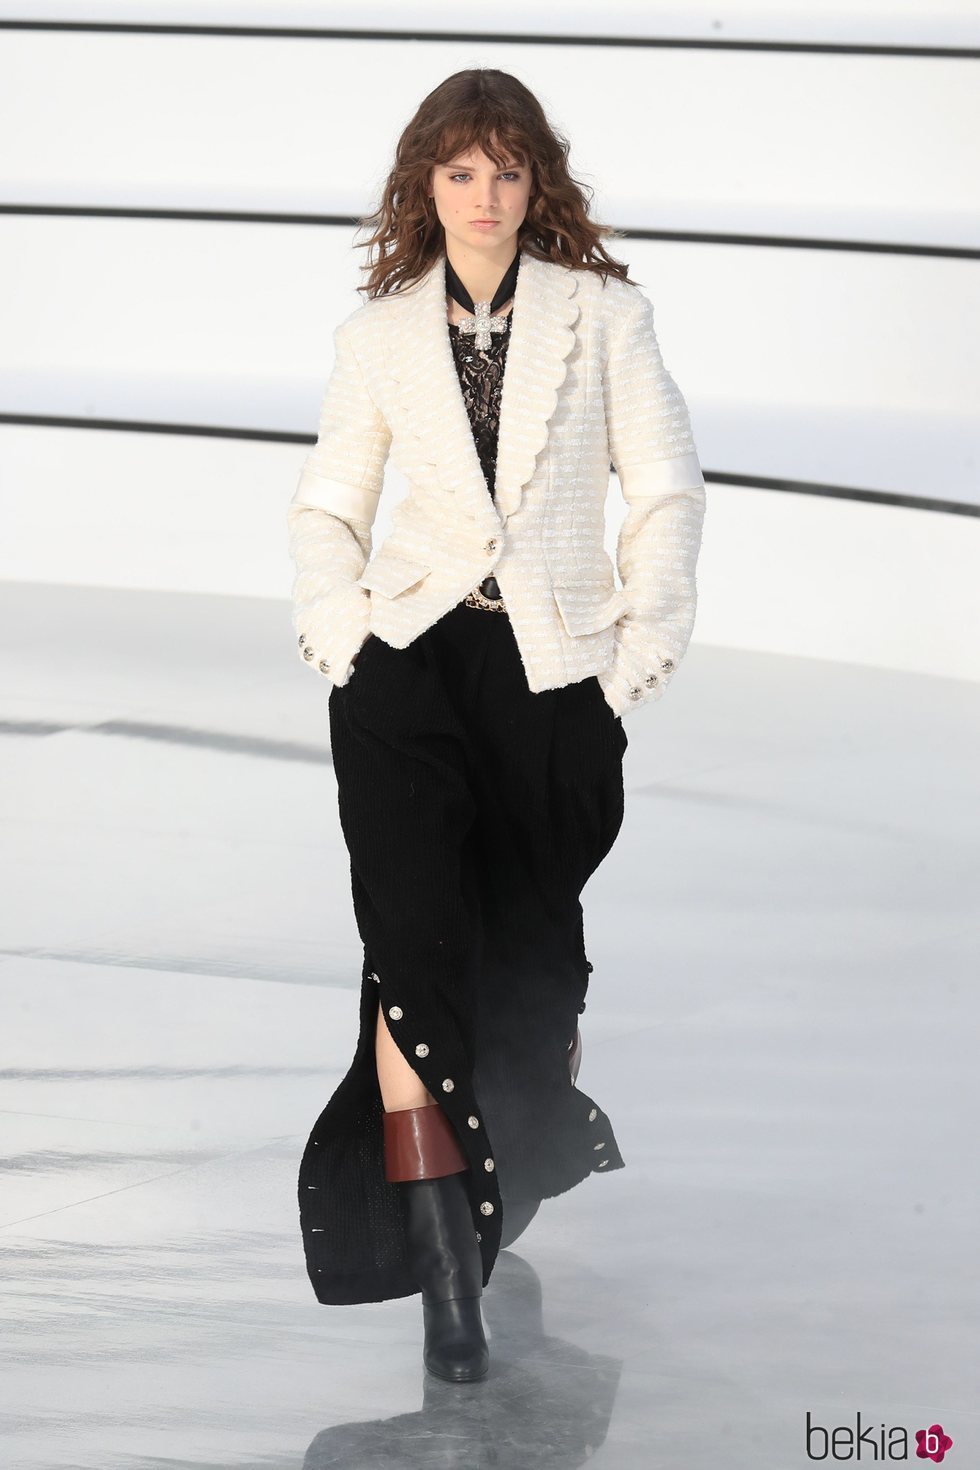 Chaqueta ajustada y falda otoño/ invierno 2020-2021 Chanel